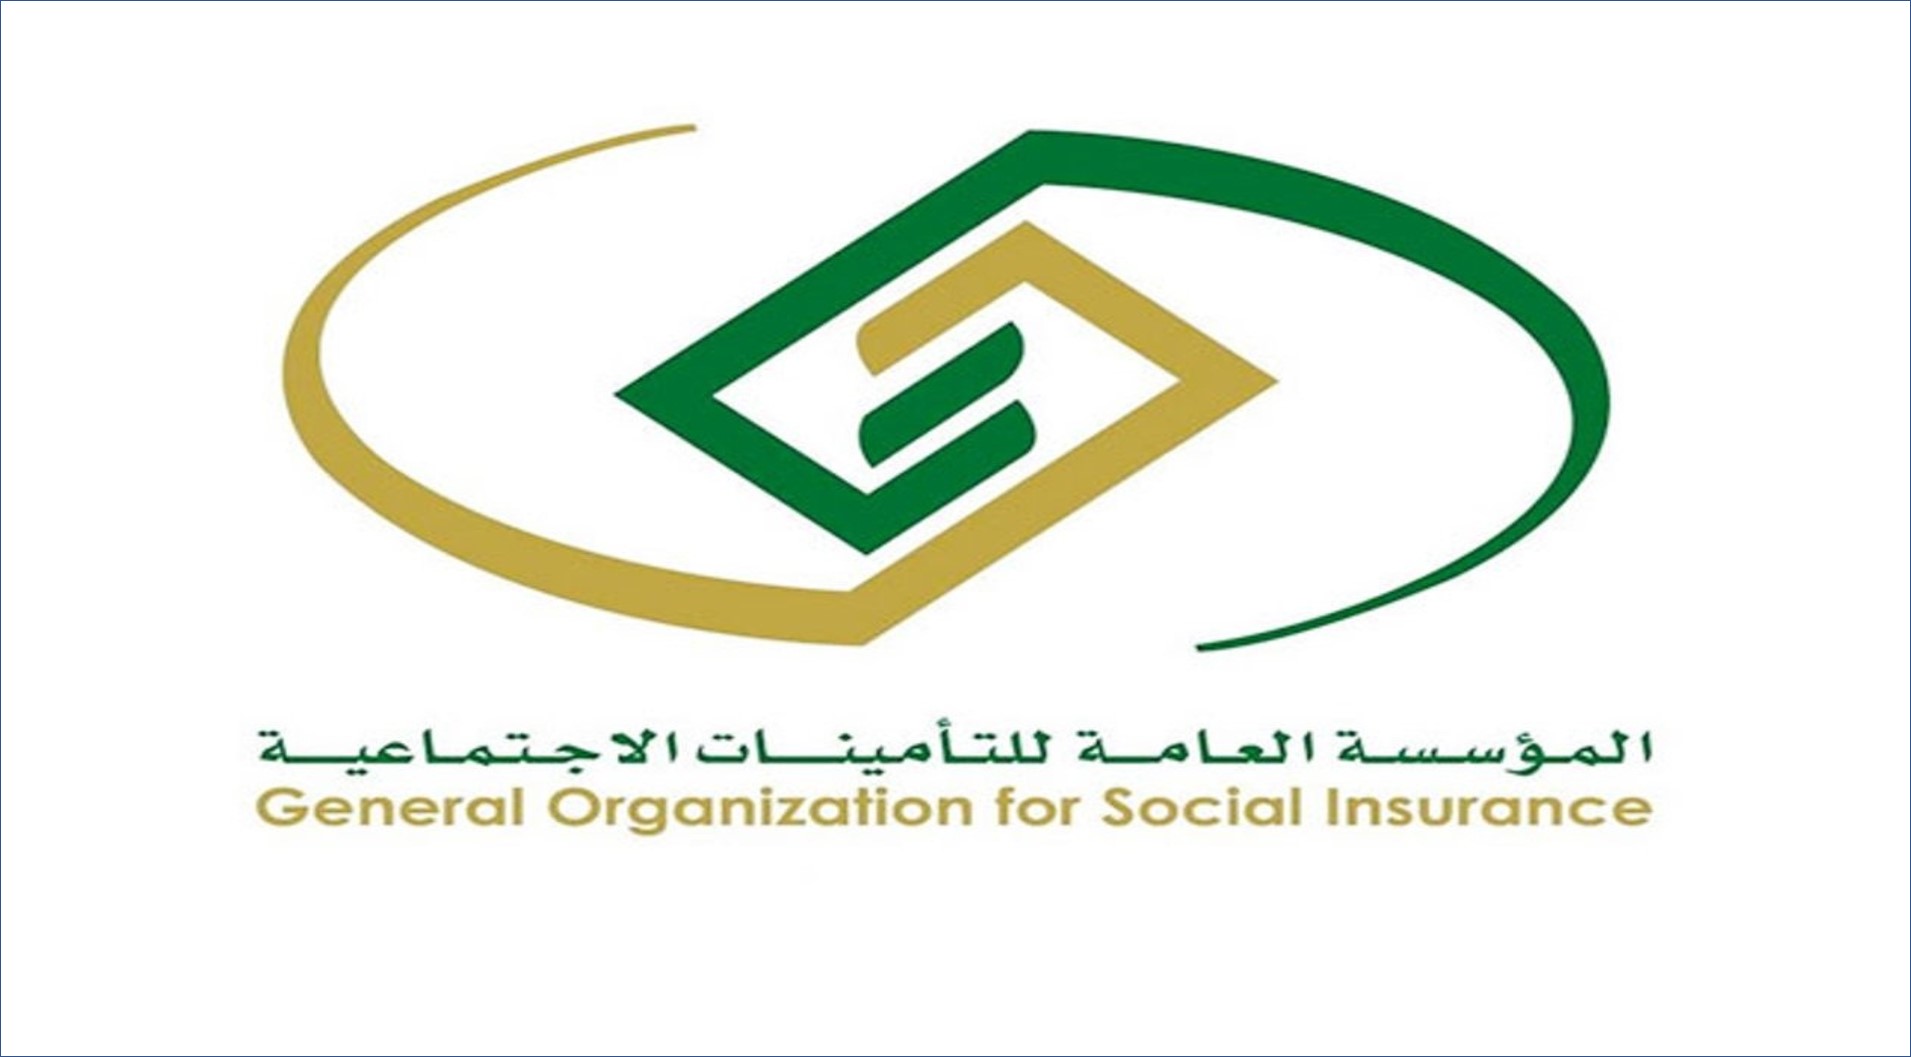 المؤسسة العامة للتأمينات الاجتماعية تعلن عن فتح باب التوظيف